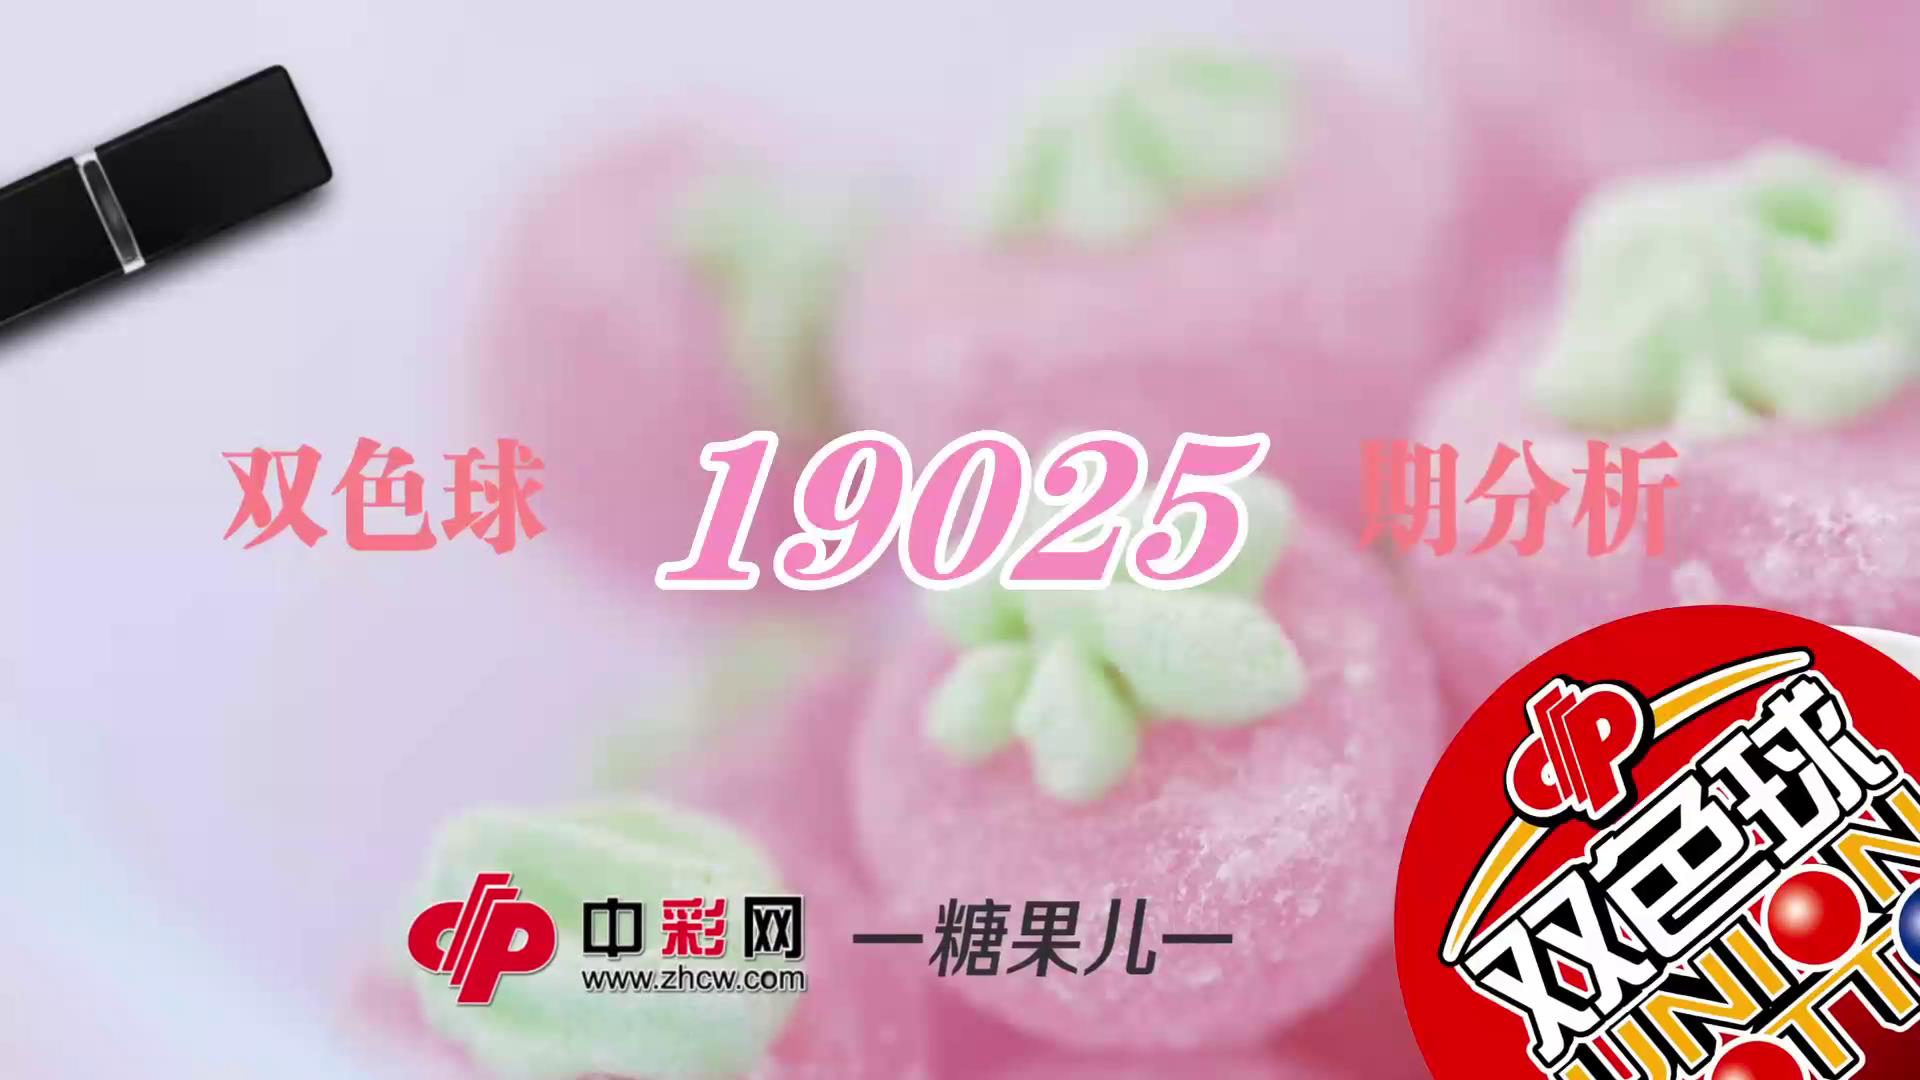 【中彩视频】糖果儿双色球第19025期